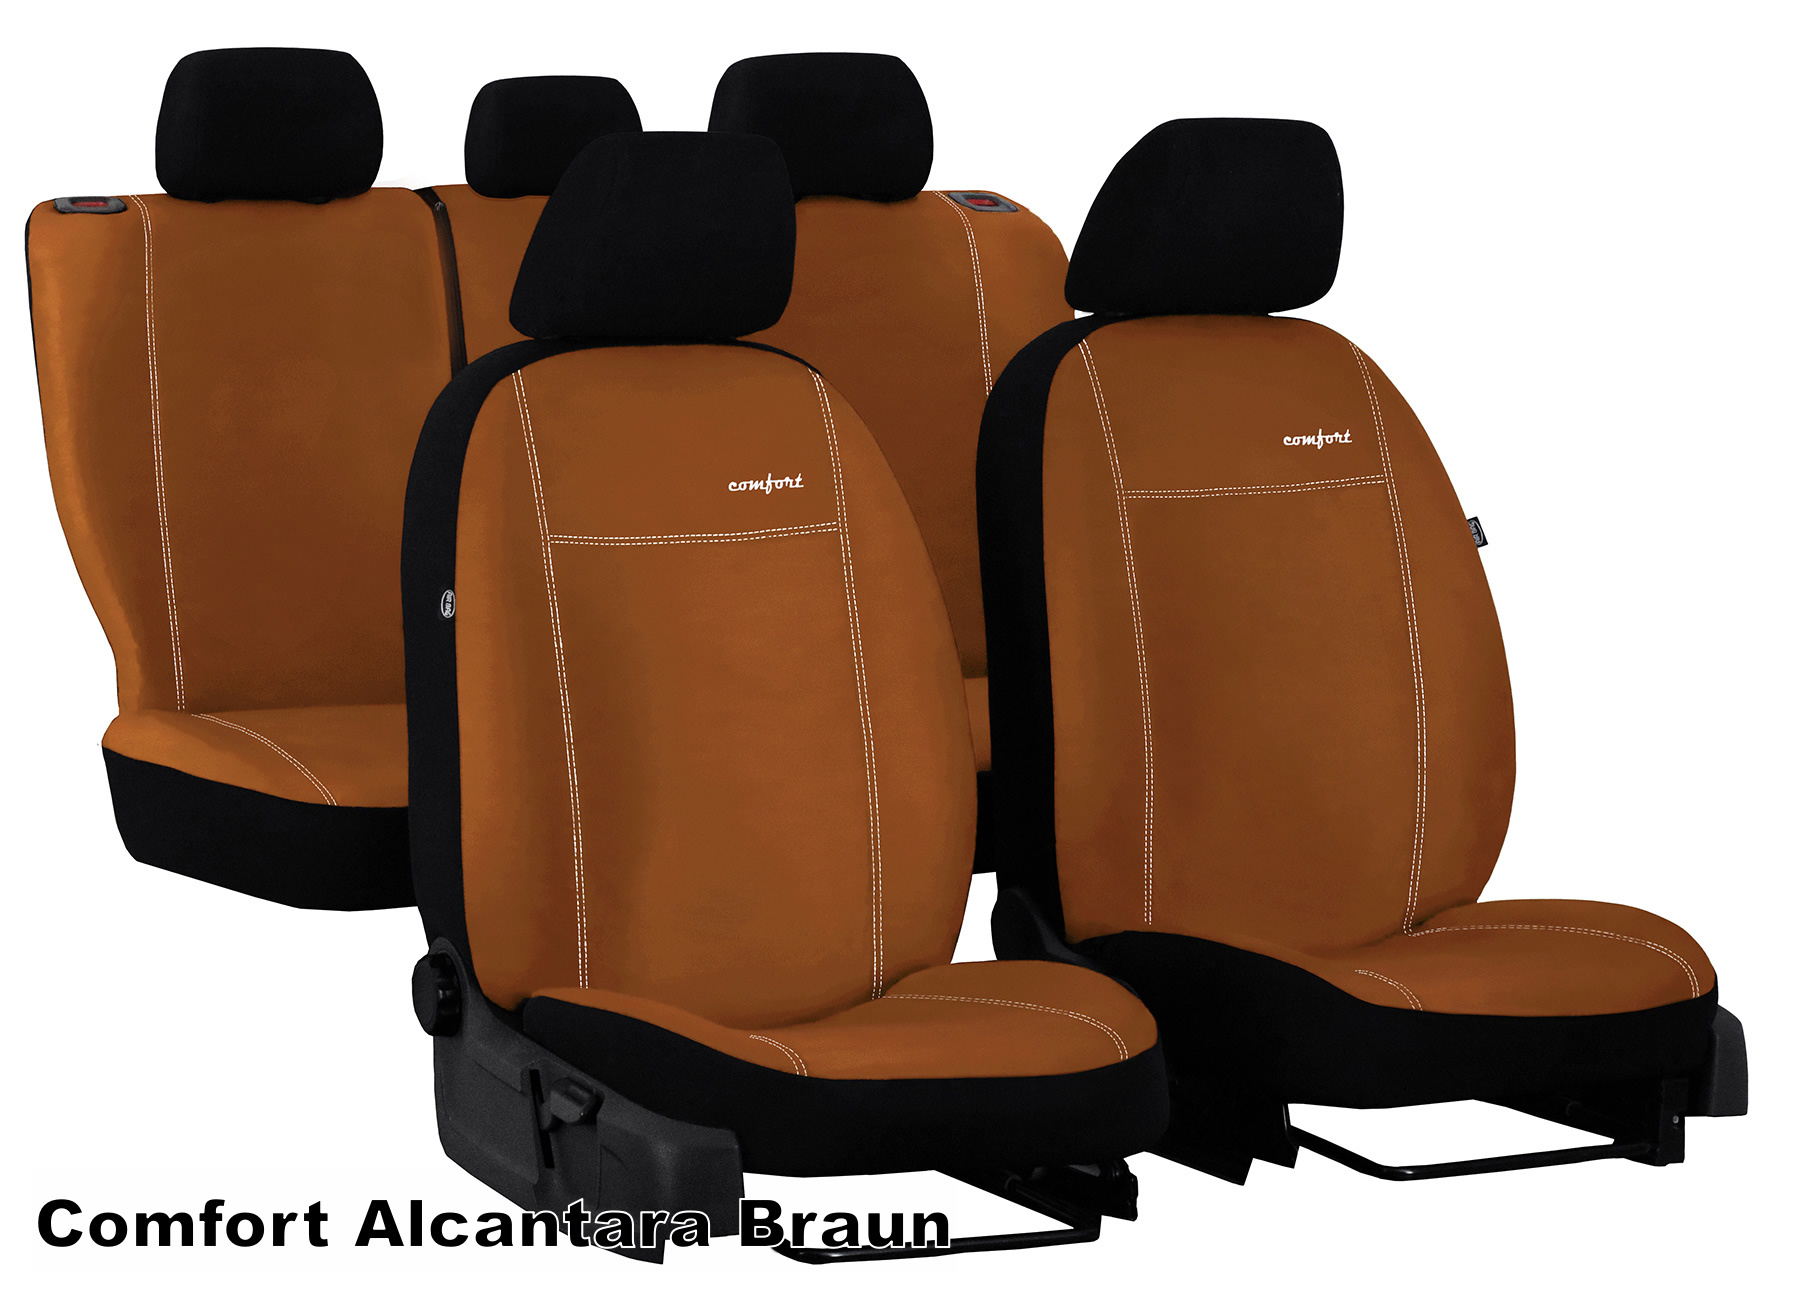 Sitzbezüge Auto Leder Autositzbezüge Universal Set Für Benz Klasse